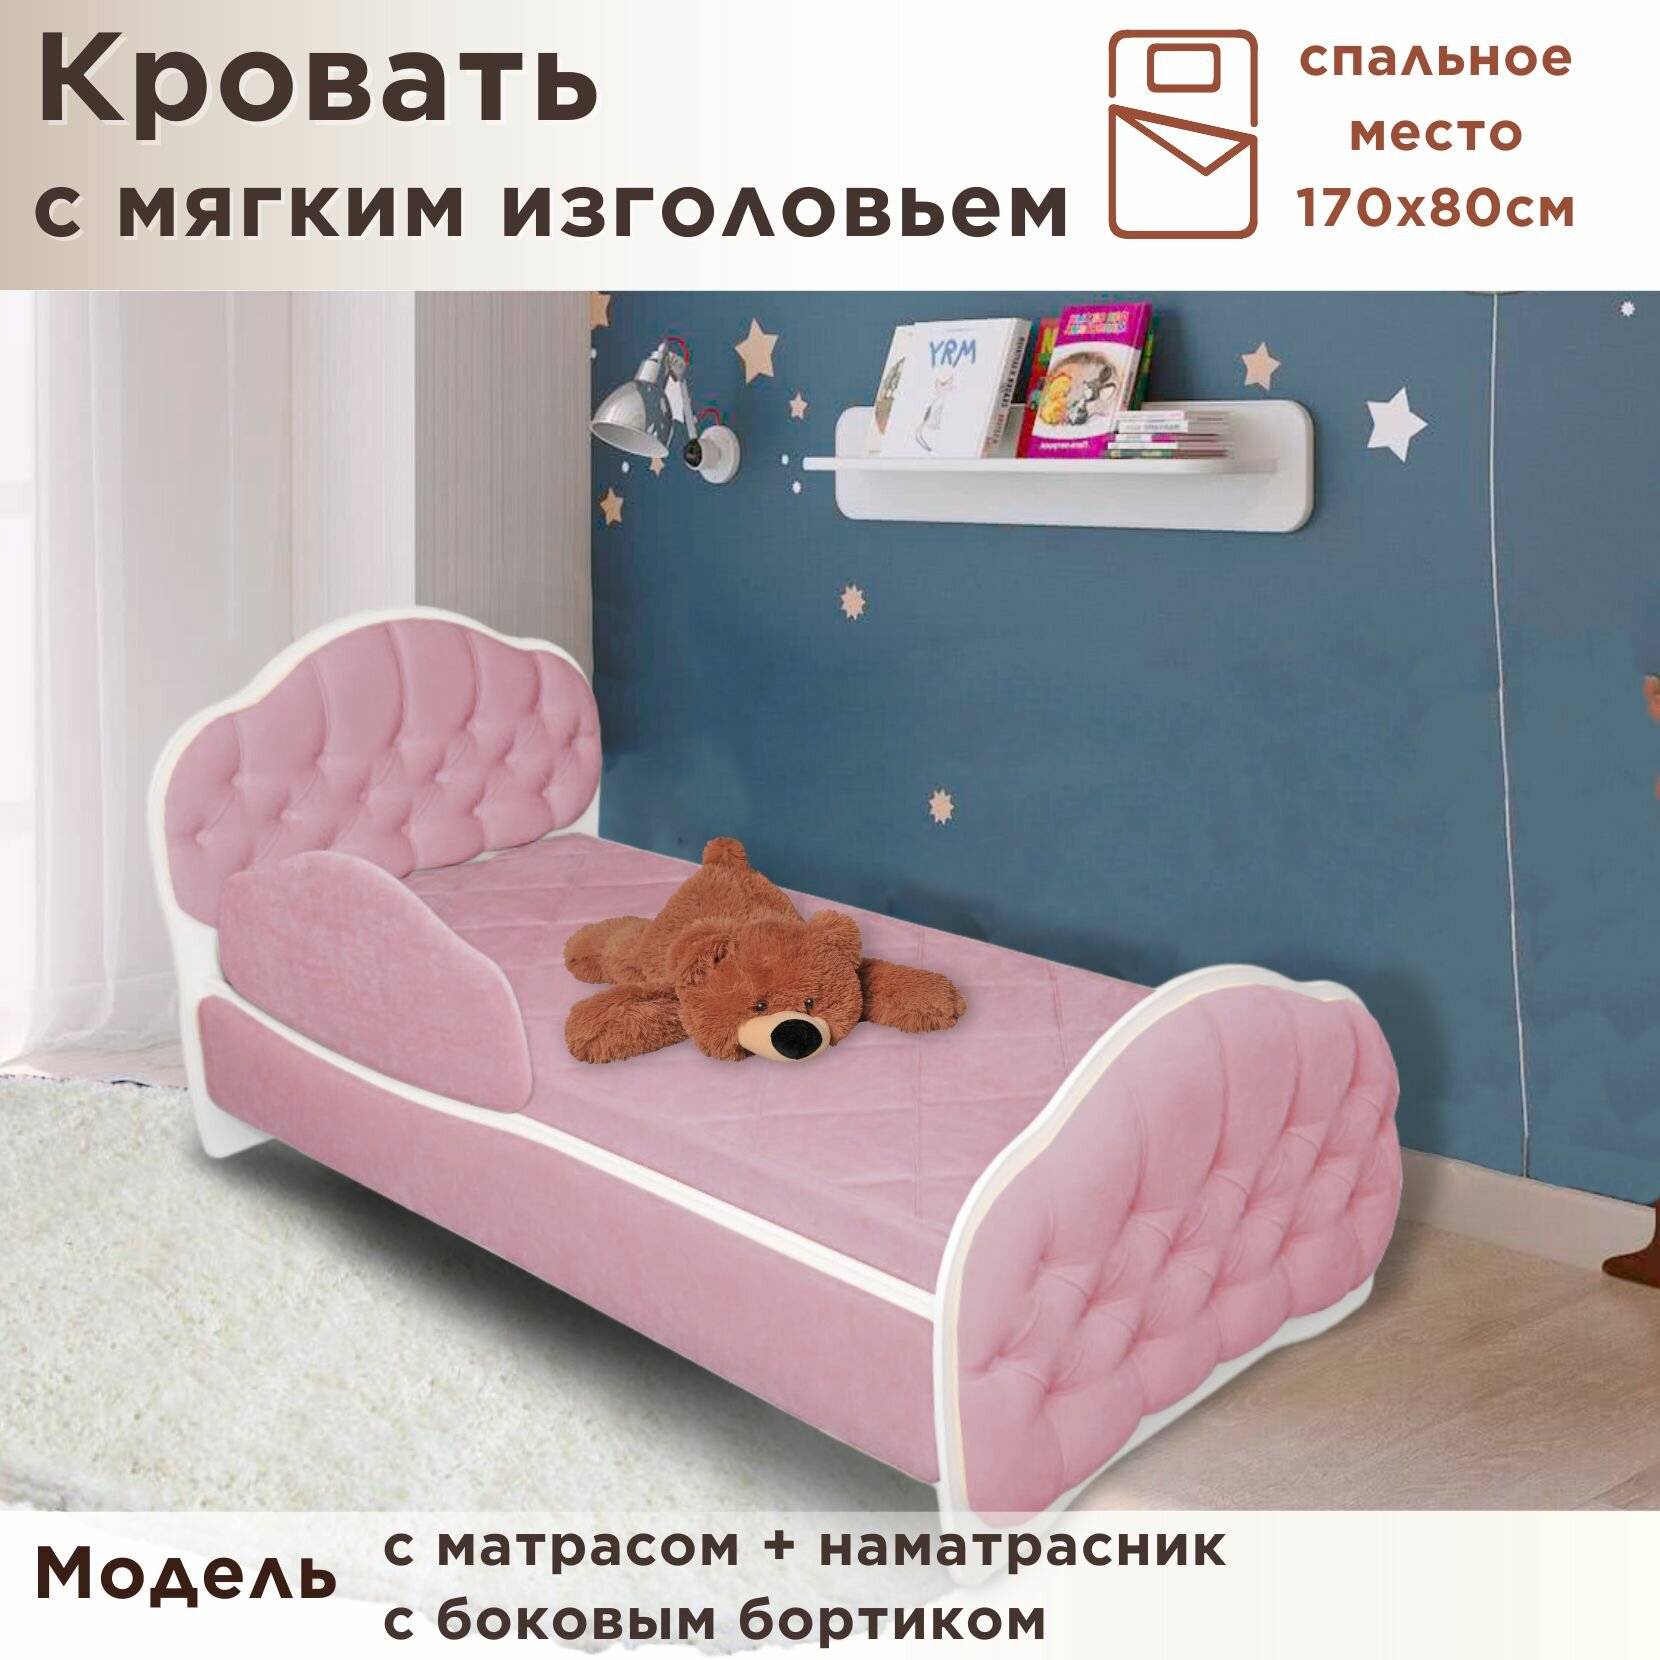 Кровать детская Гармония 170х80 см, Teddy 326, кровать + матрас + бортик + наматрасник